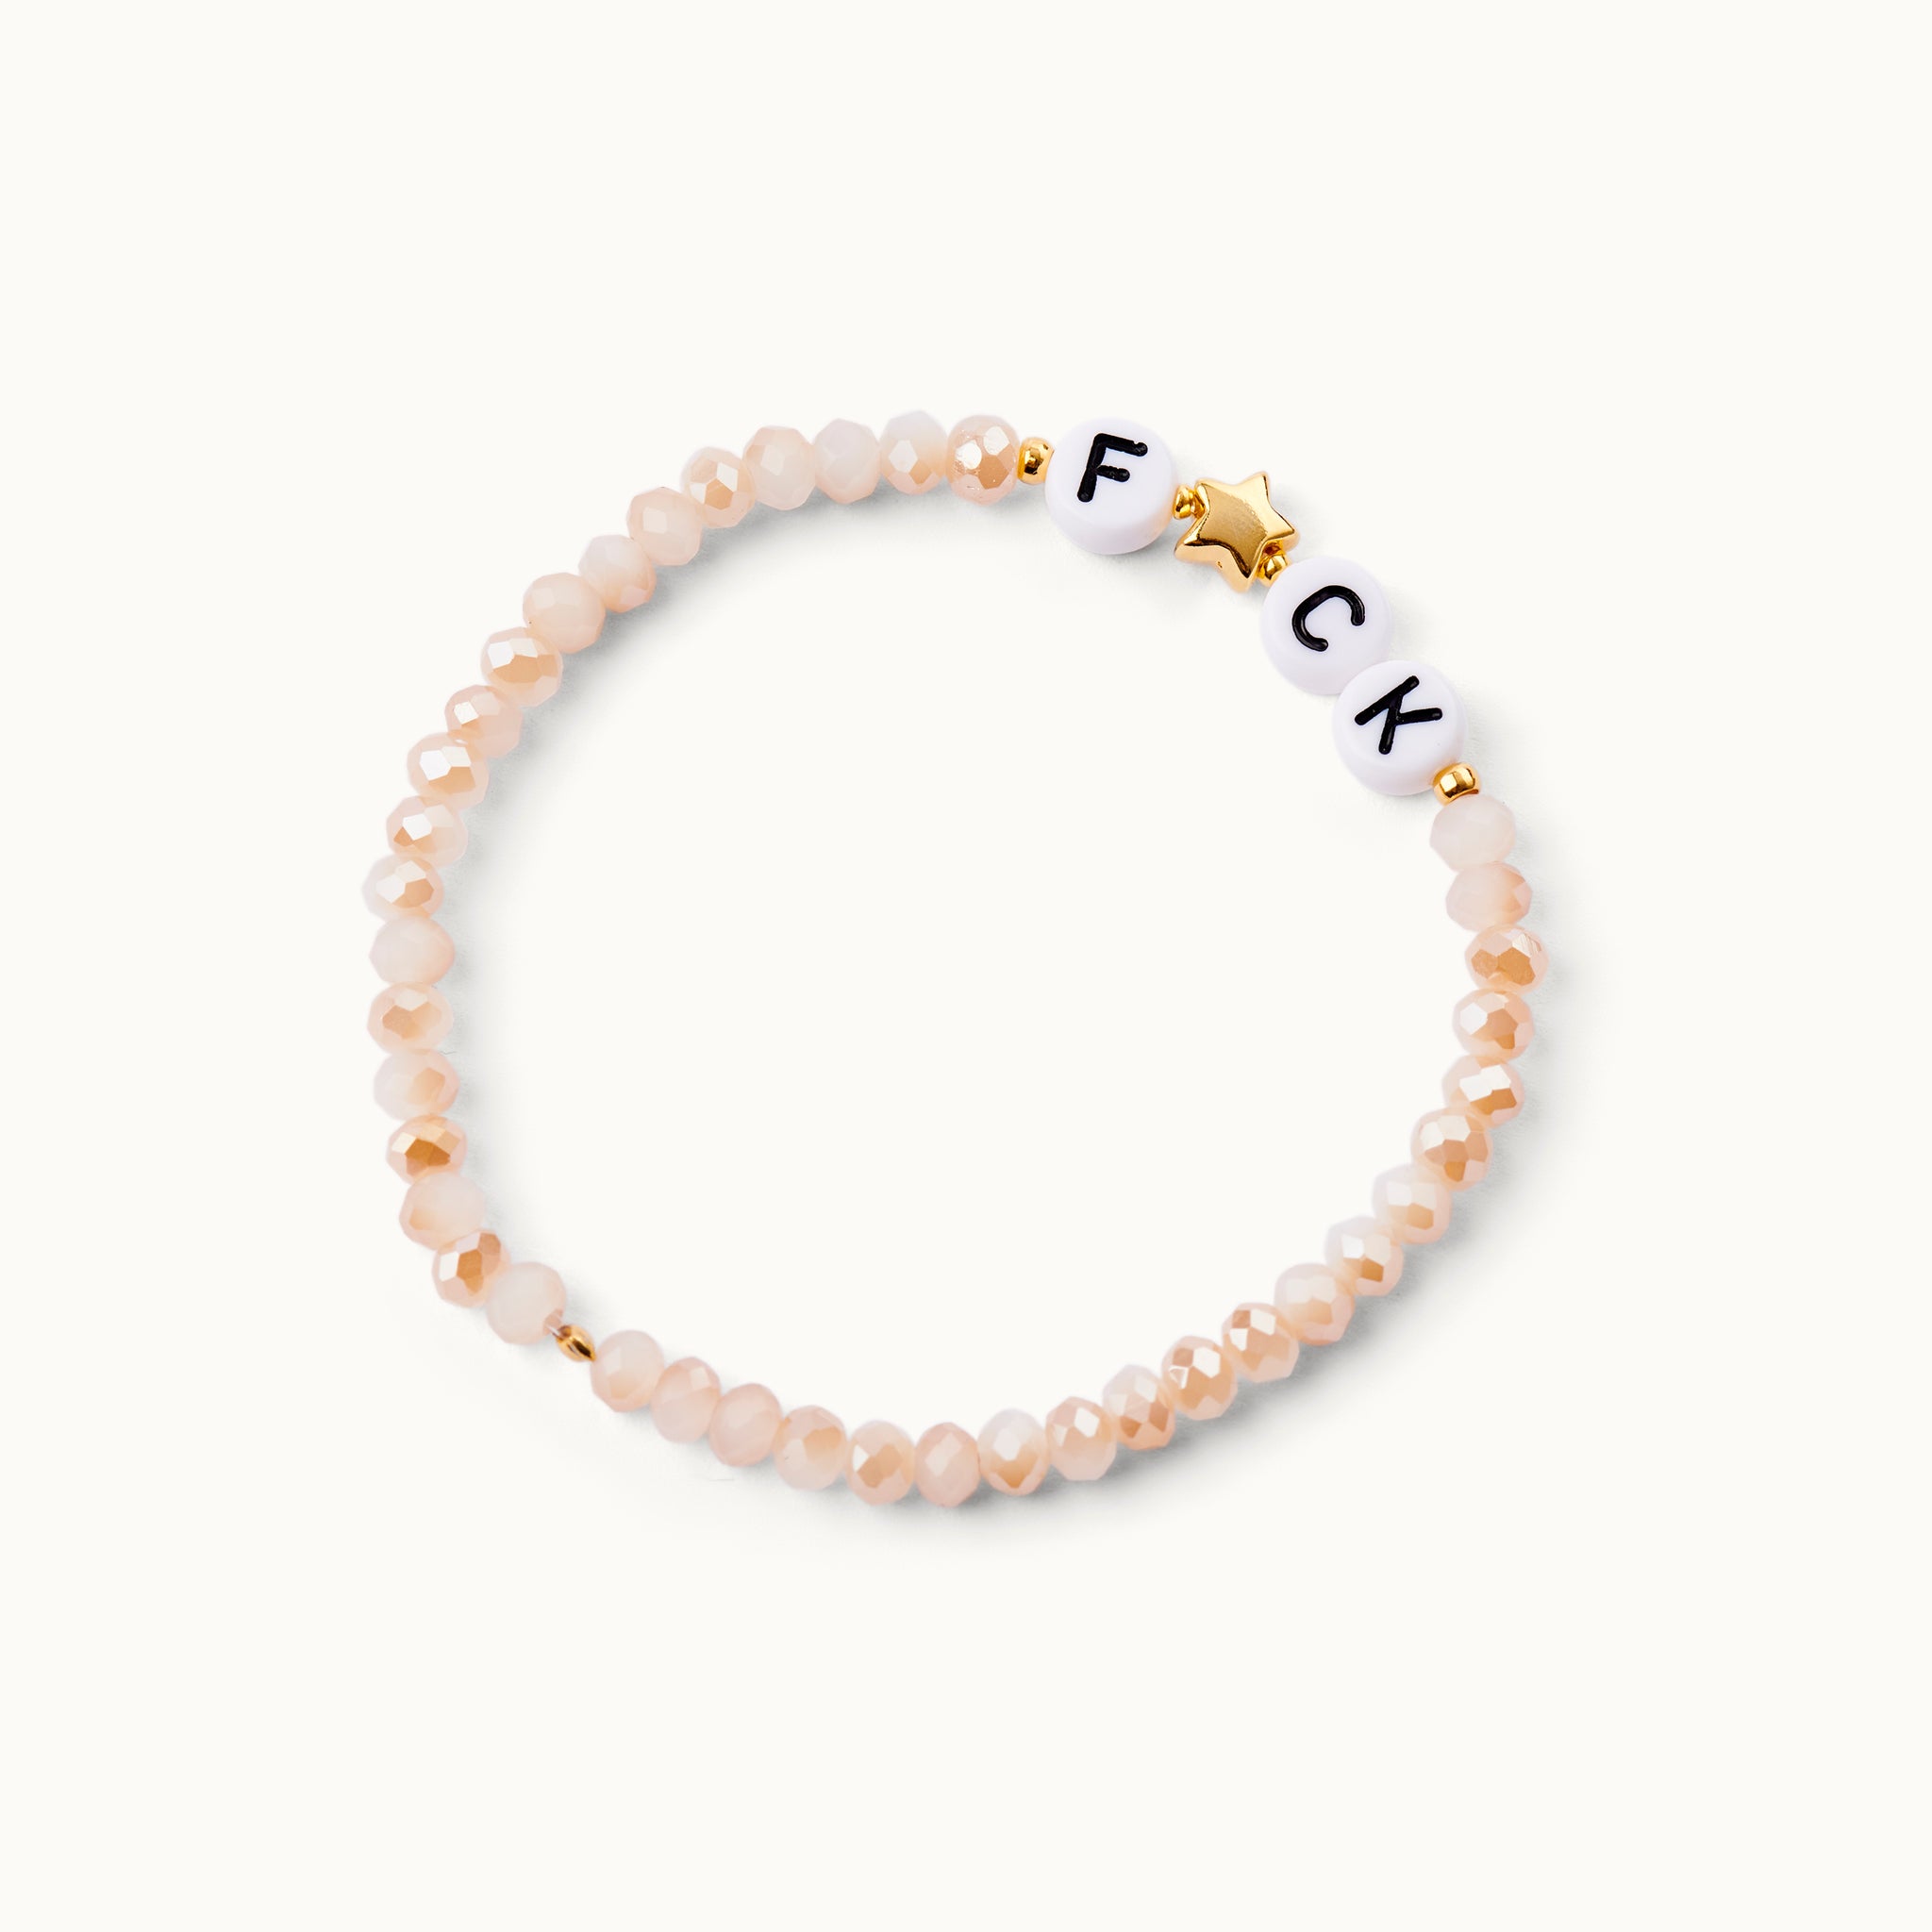 F☆CK  Glasperlenarmband in Nude-Tönen mit Acryl-Perlen und einem 18 Karat vergoldeten Stern sowie 18 Karat vergoldeten Kugeln. 